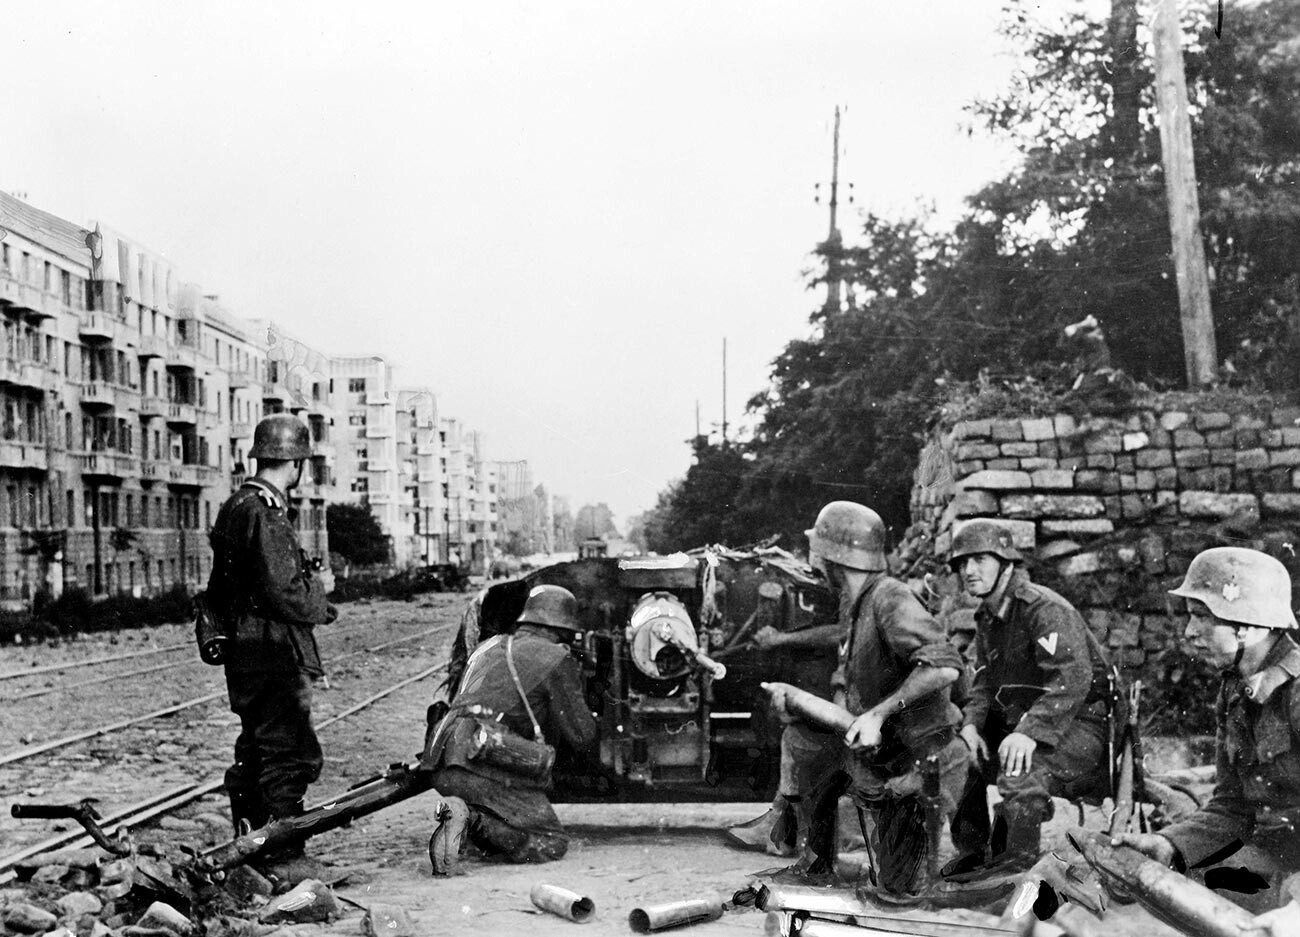 Drugi svjetski rat. Ruski front. Zauzimanje Rostova na Donu pod zapovjedništvom njemačkog generala von Kleista (1881-1954). Njemački top u uličnim borbama. 28. srpnja 1942.